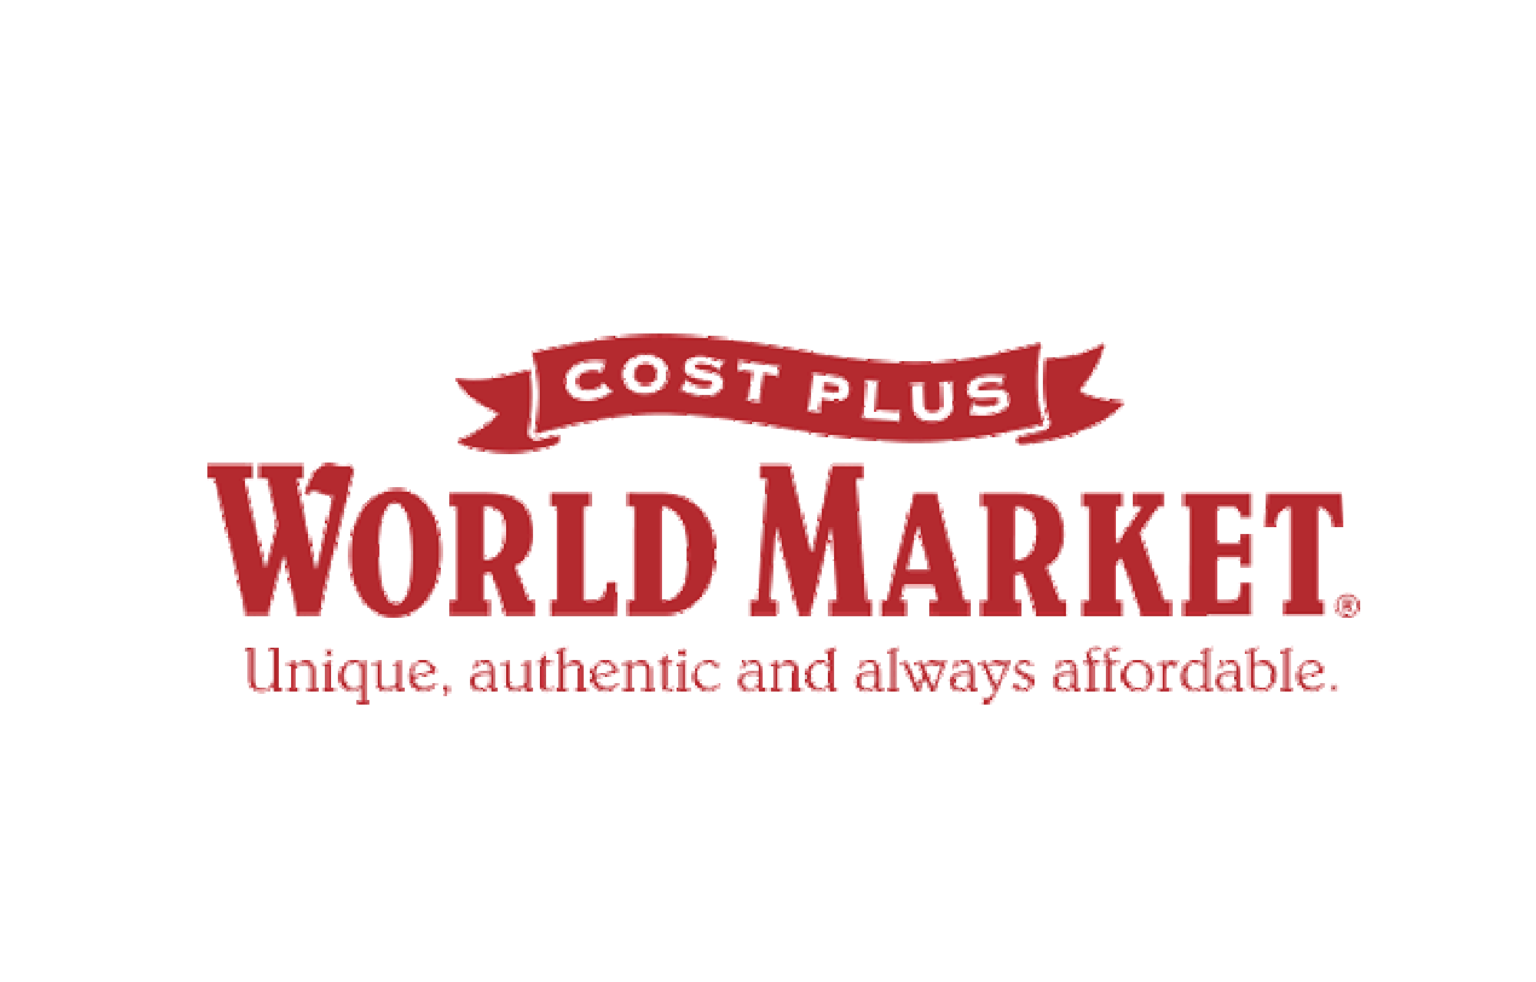 World Market Logo